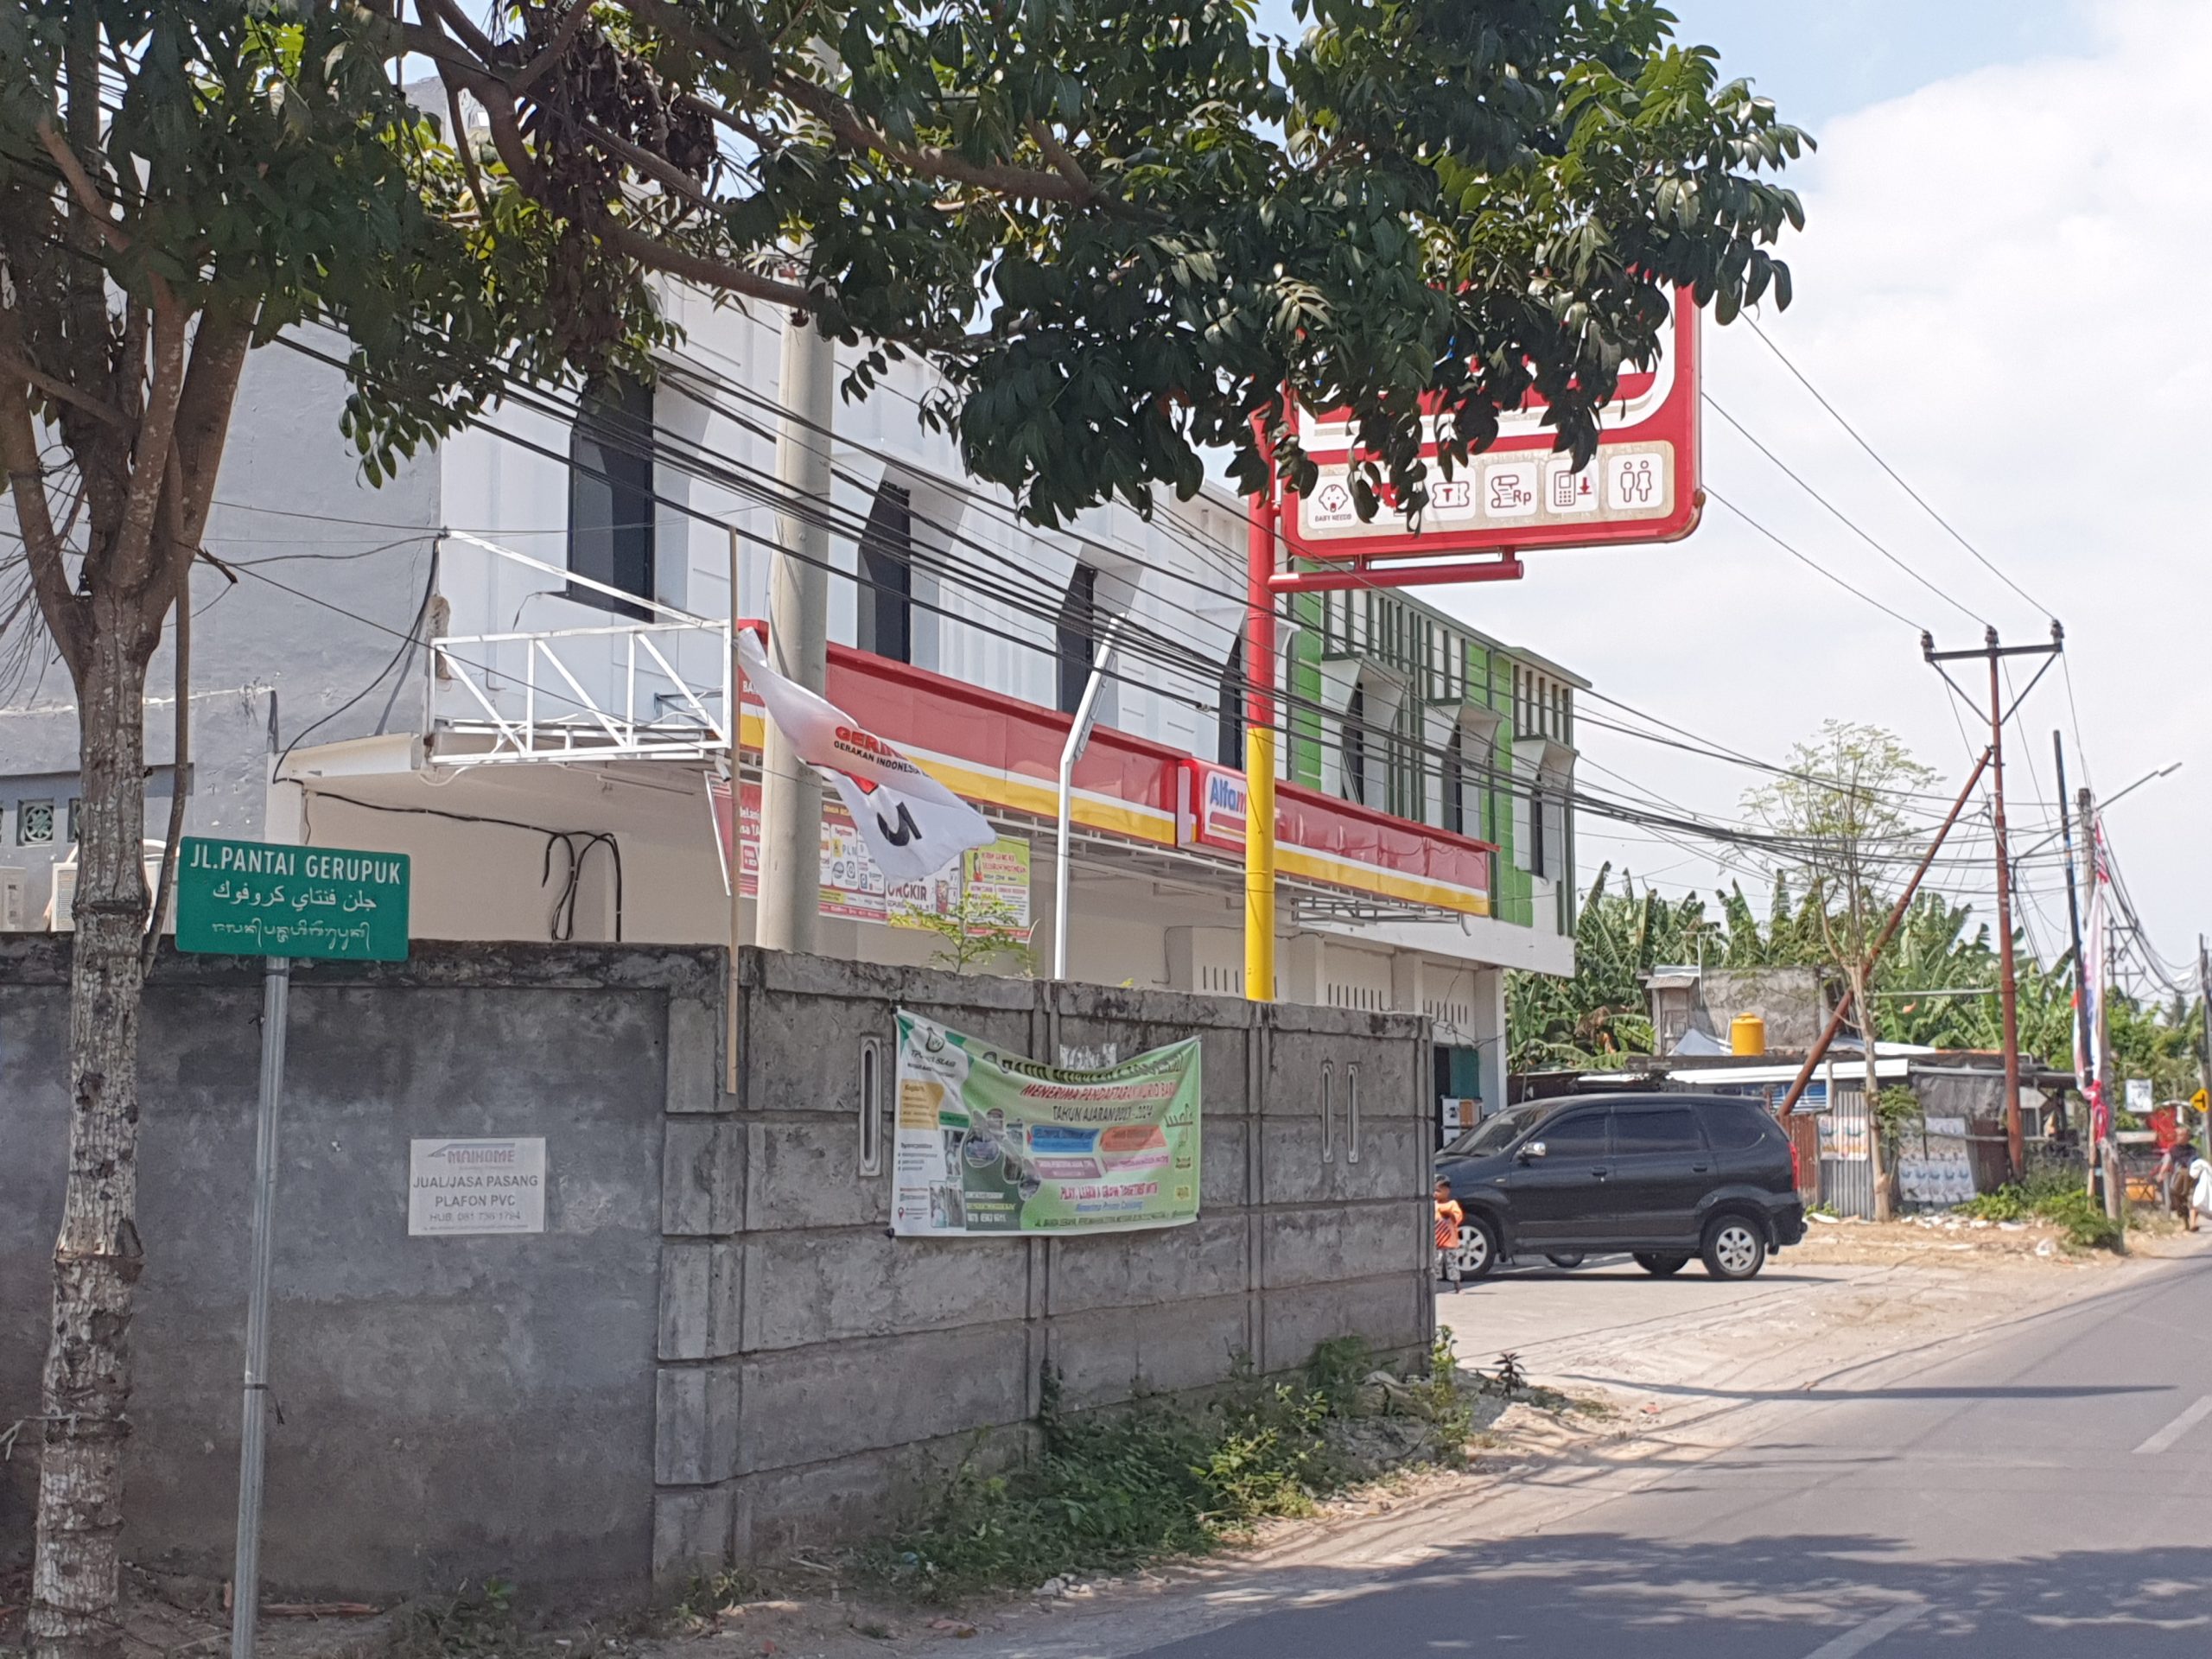 Alfamart Sudah Masuk Jalan Kecil di Mataram